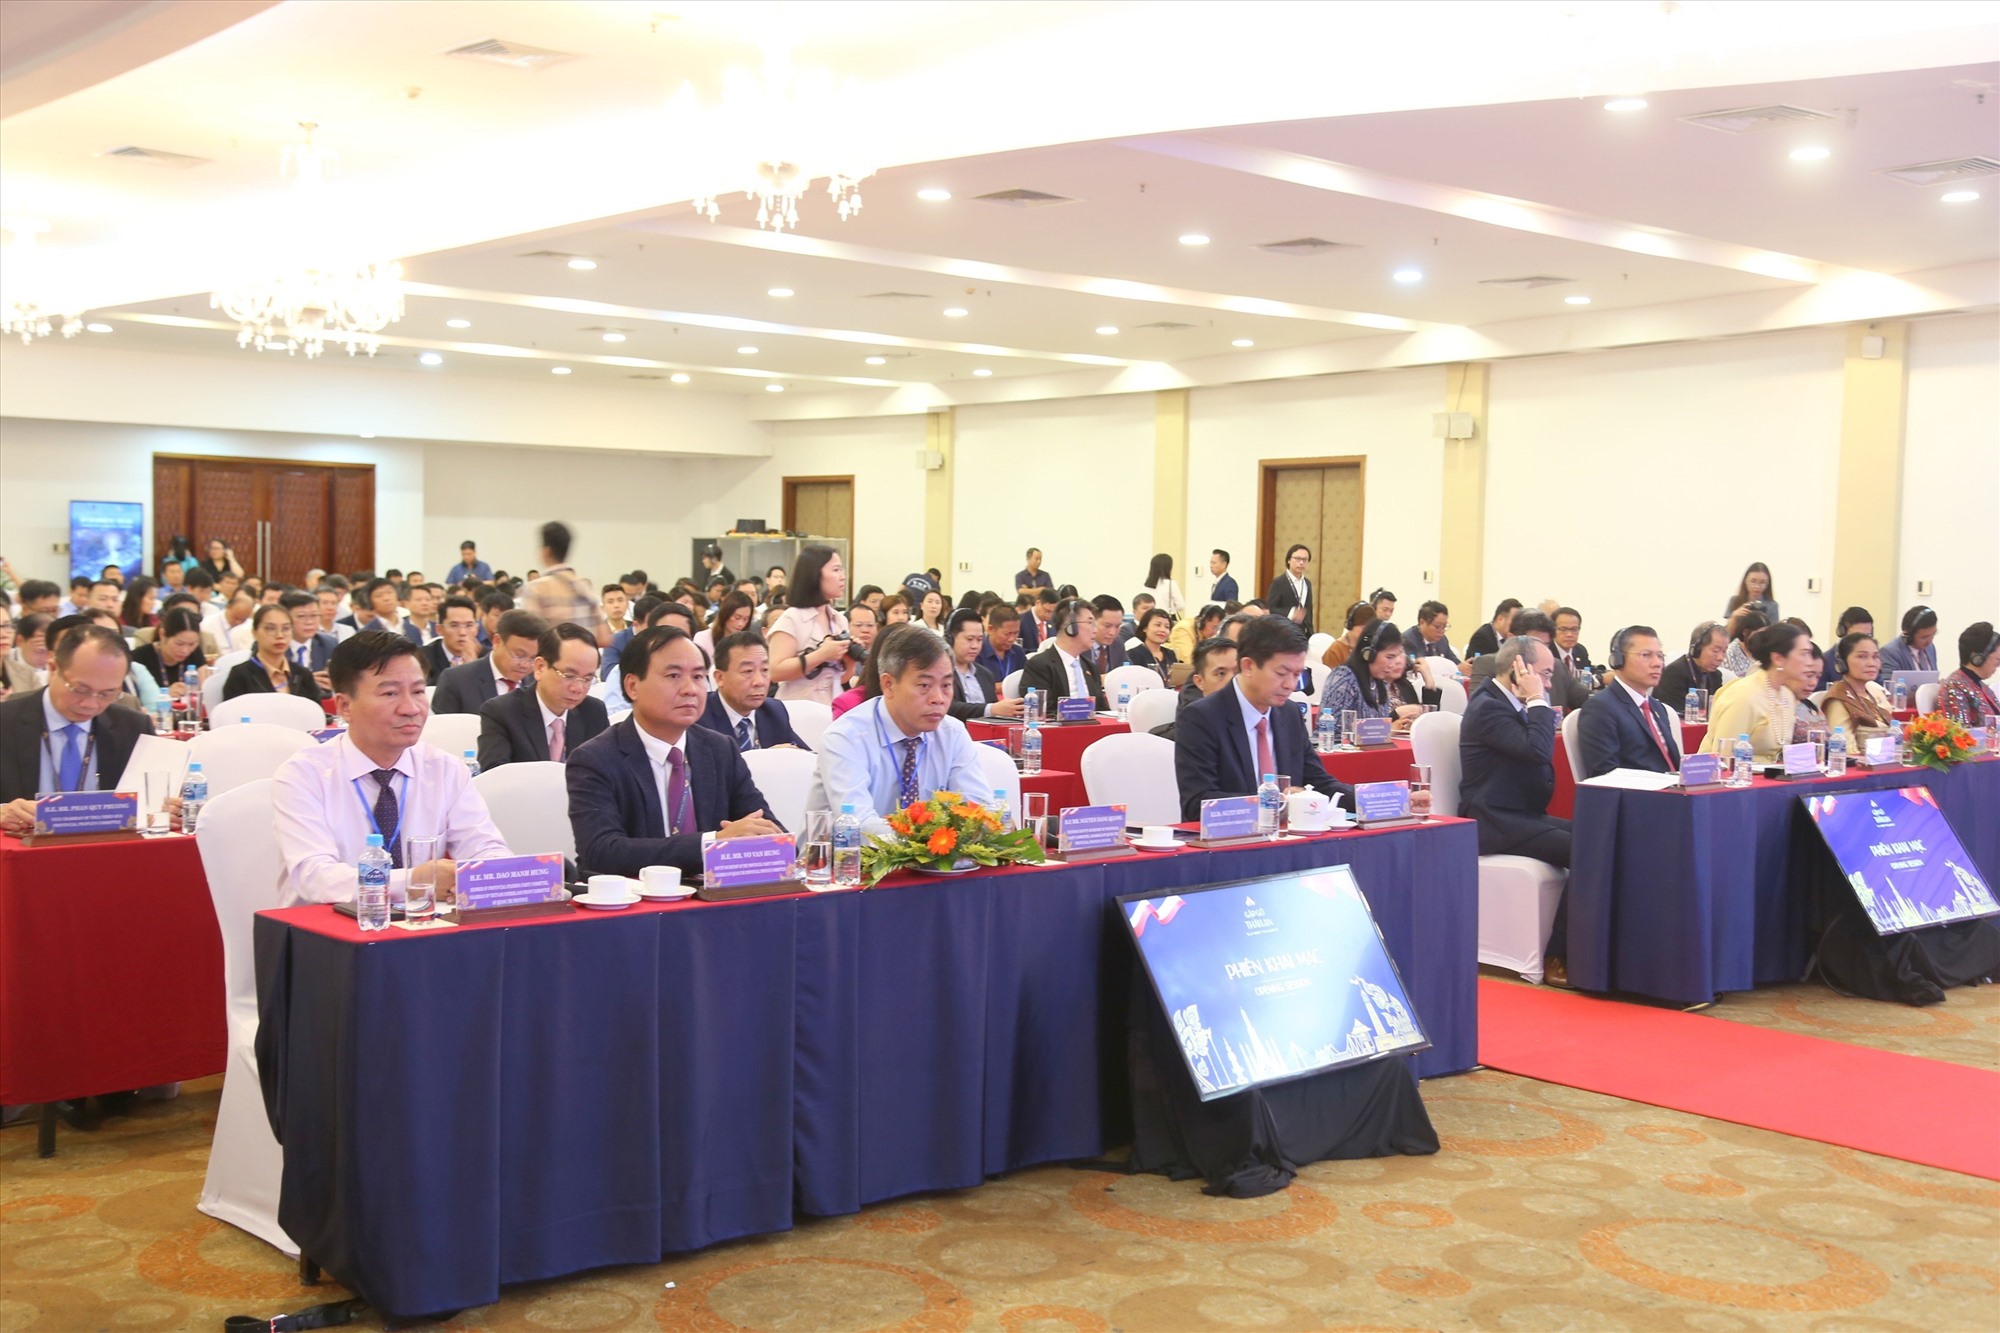 Các đại biểu tham dự Hội nghị “Gặp gỡ Thái Lan” - Ảnh: T.T